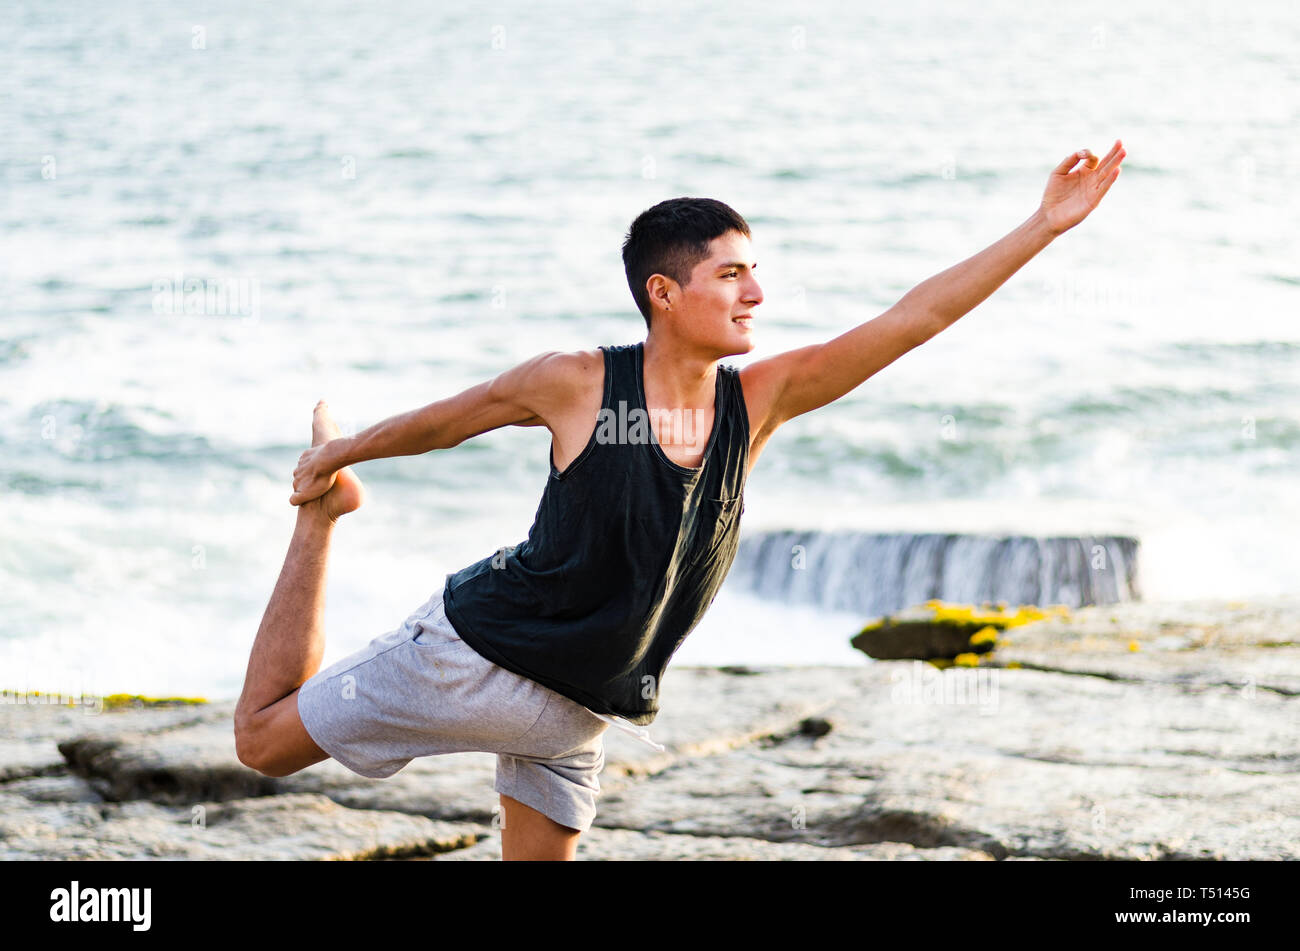 Homme en bonne santé pratiquant le yoga. Stretching en position naturelle dans Natarajasana, beau paysage de mer, coucher de soleil, nature, concept pour faire de l'exercice, les soins de santé Banque D'Images